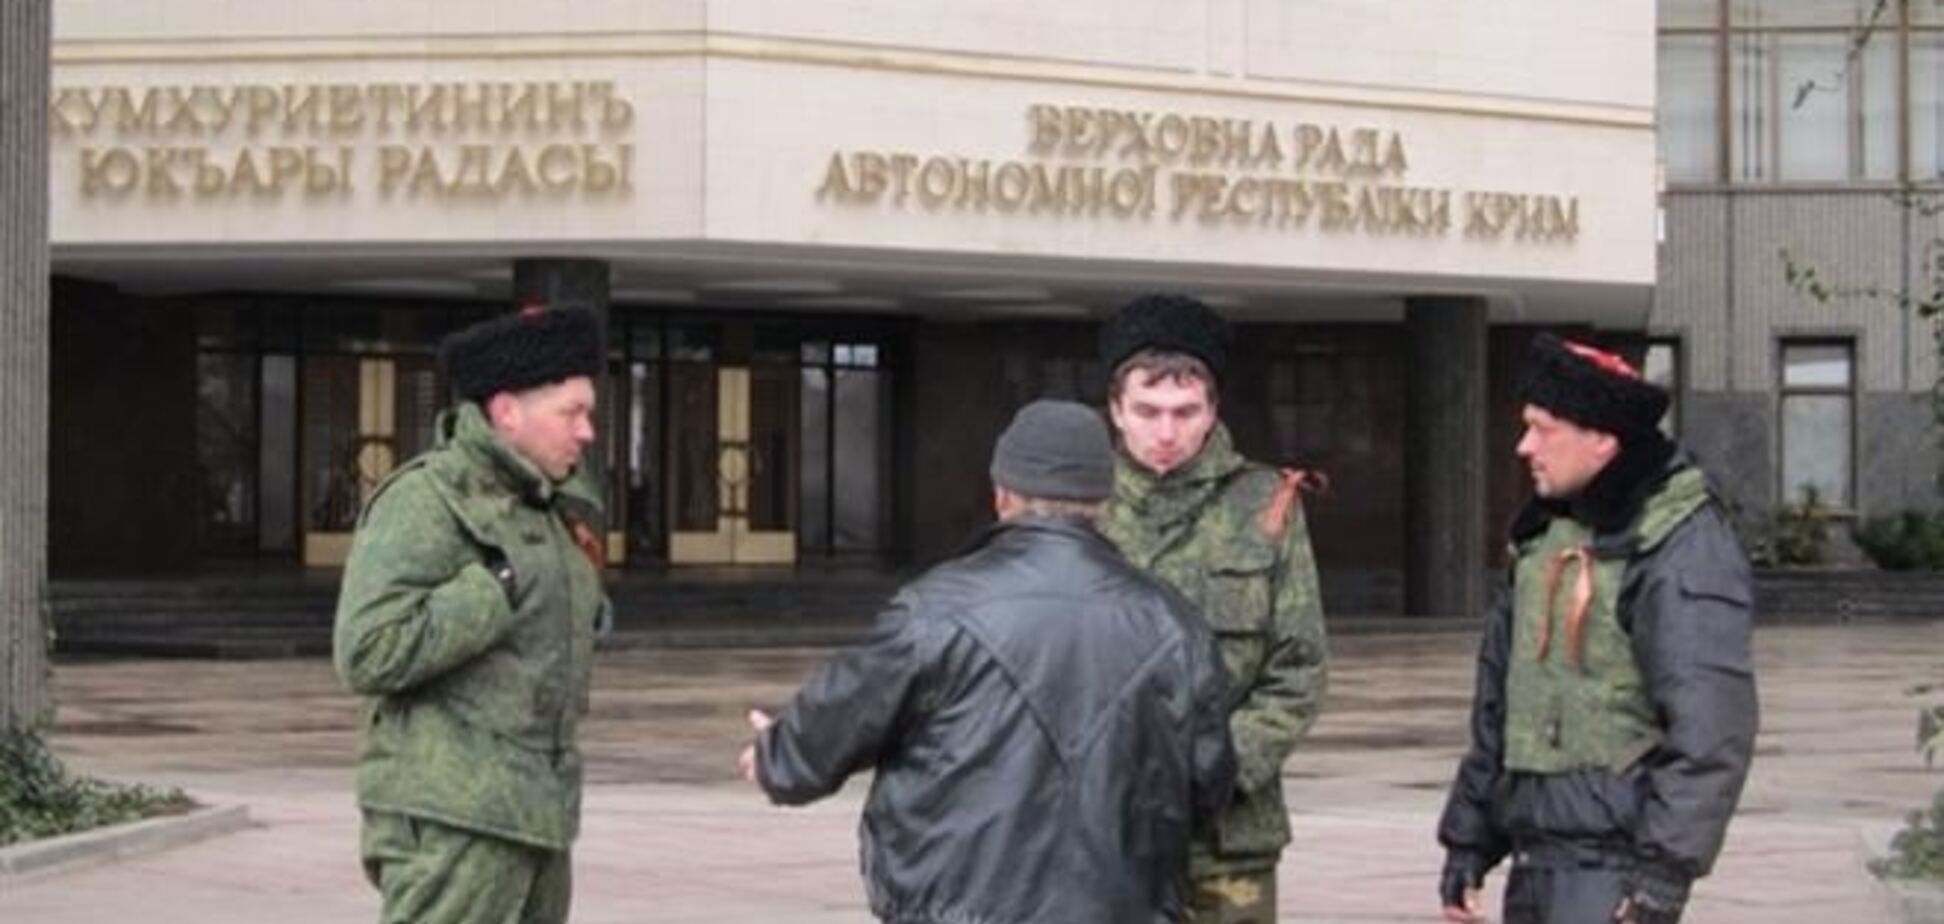 В Крыму админздания охраняют русские казаки